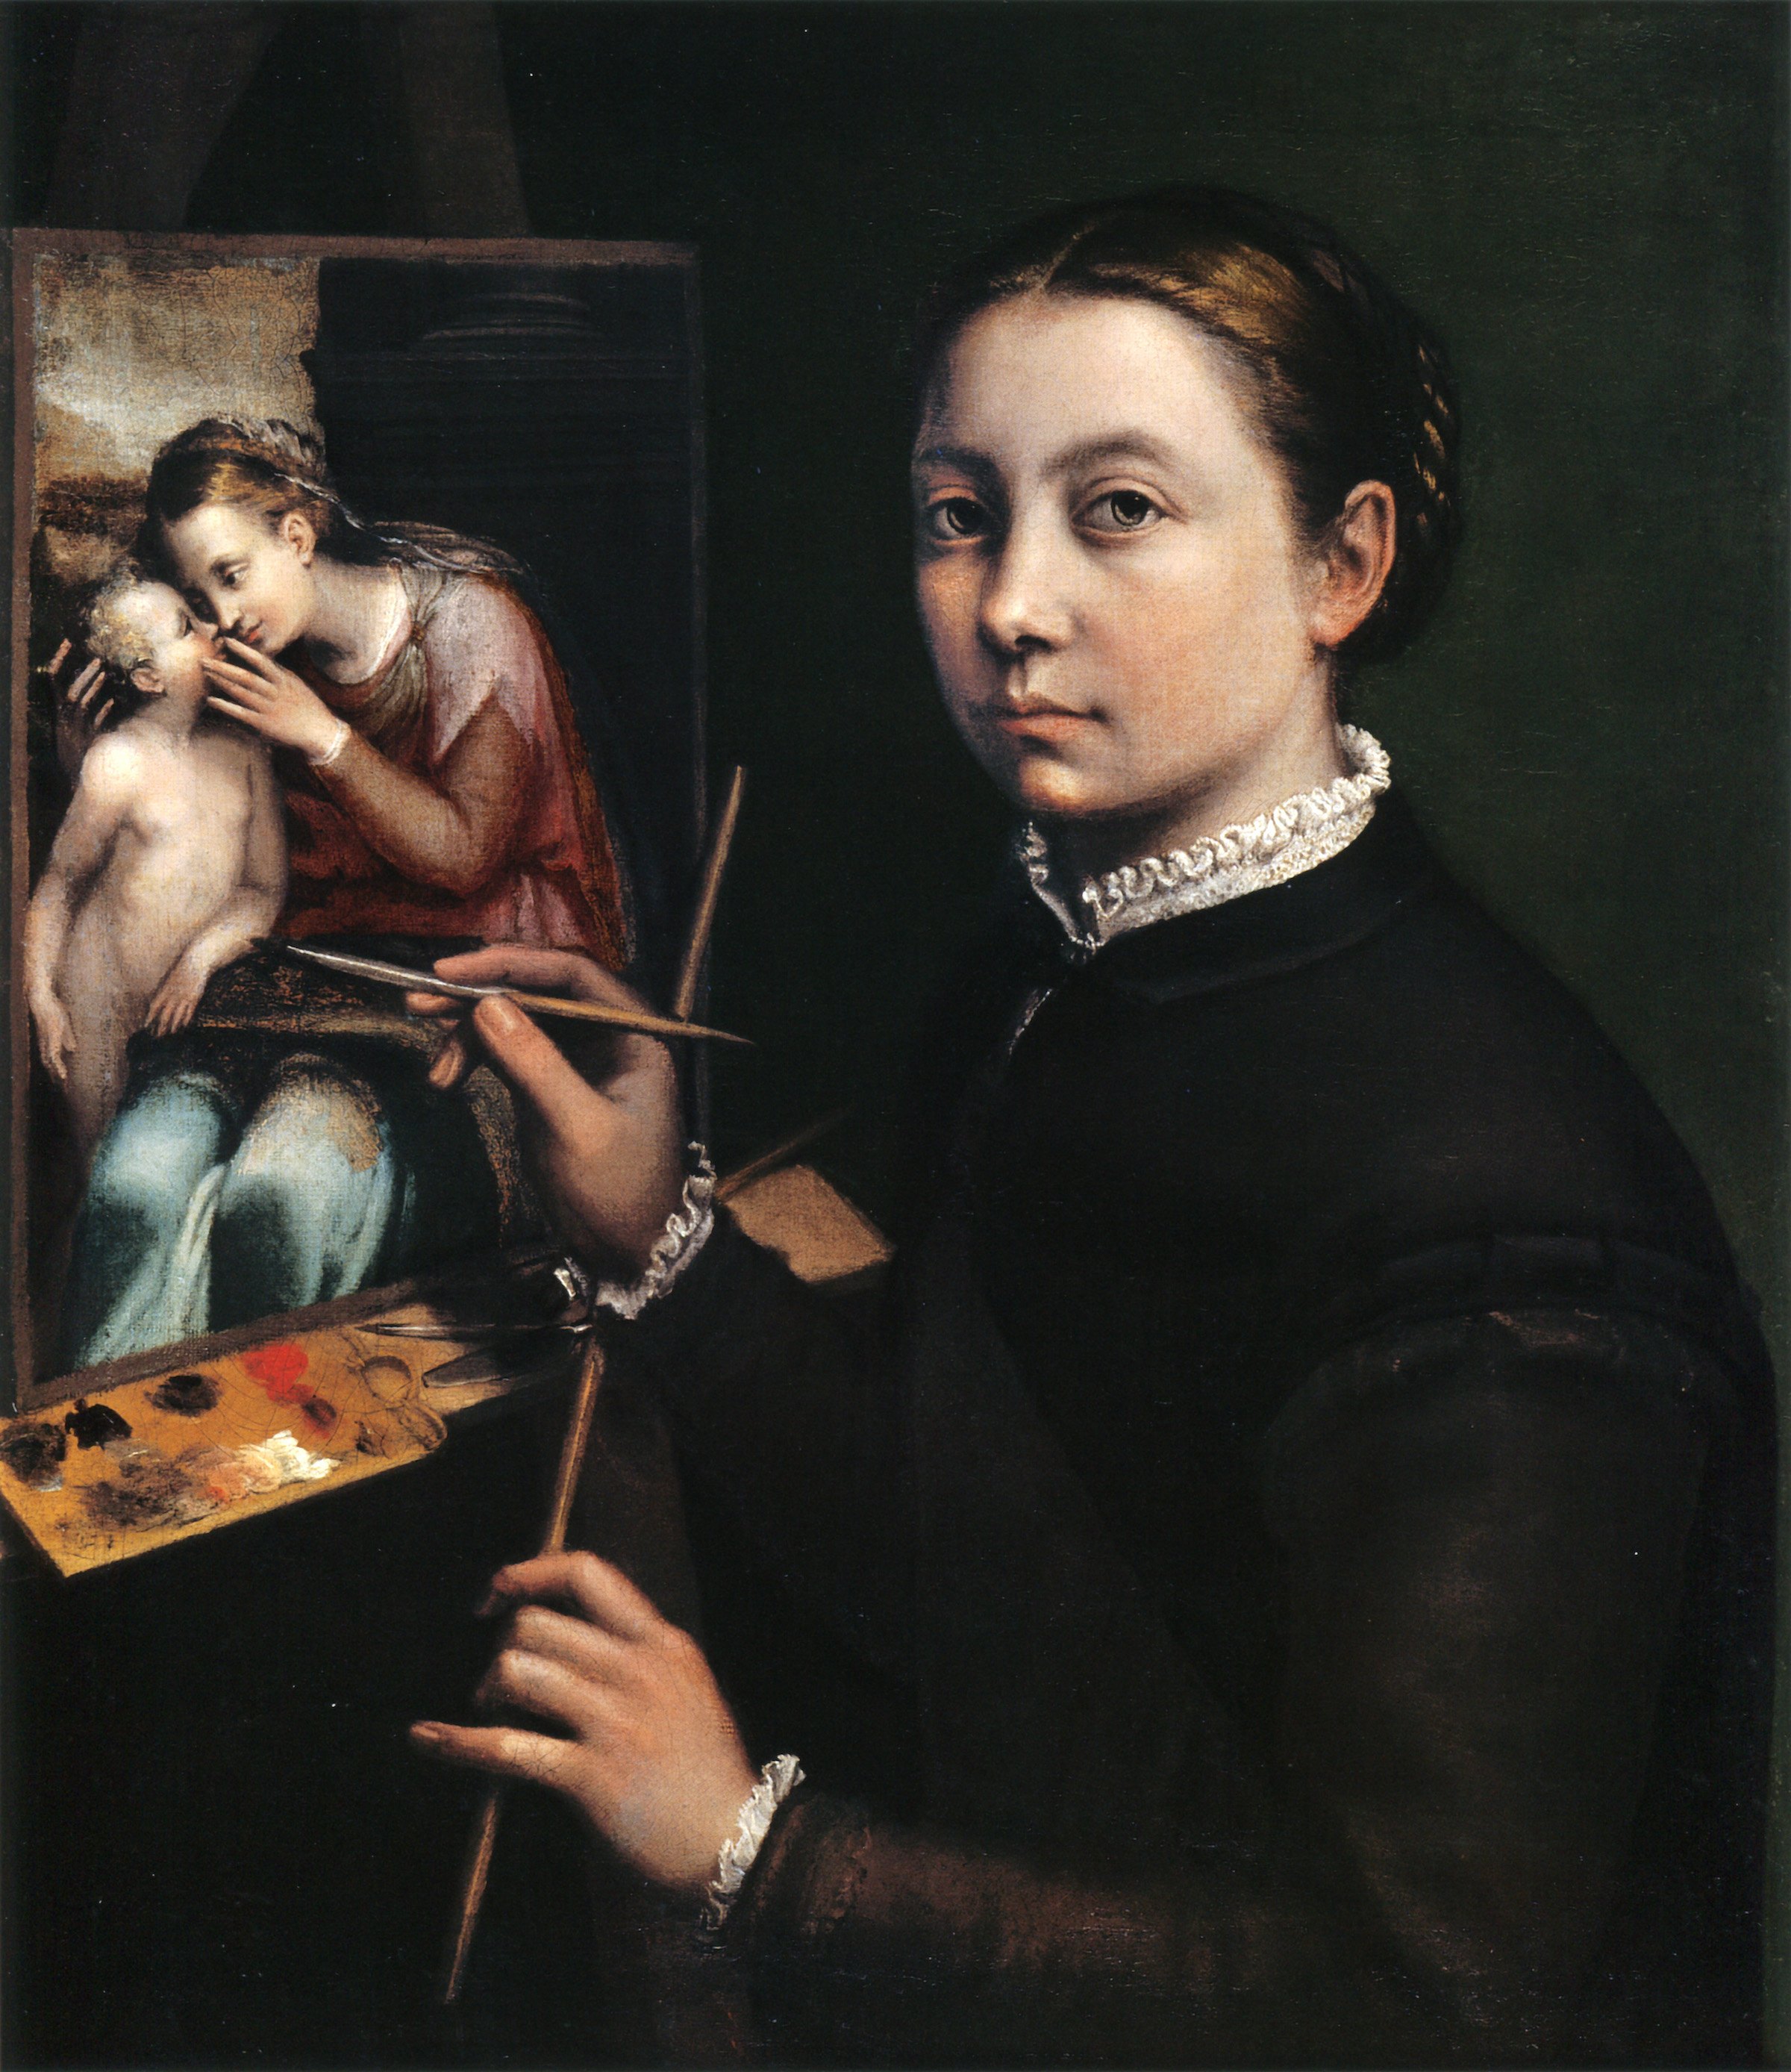 Sofonisba Anguissola - c. 1532 - November 16, 1625